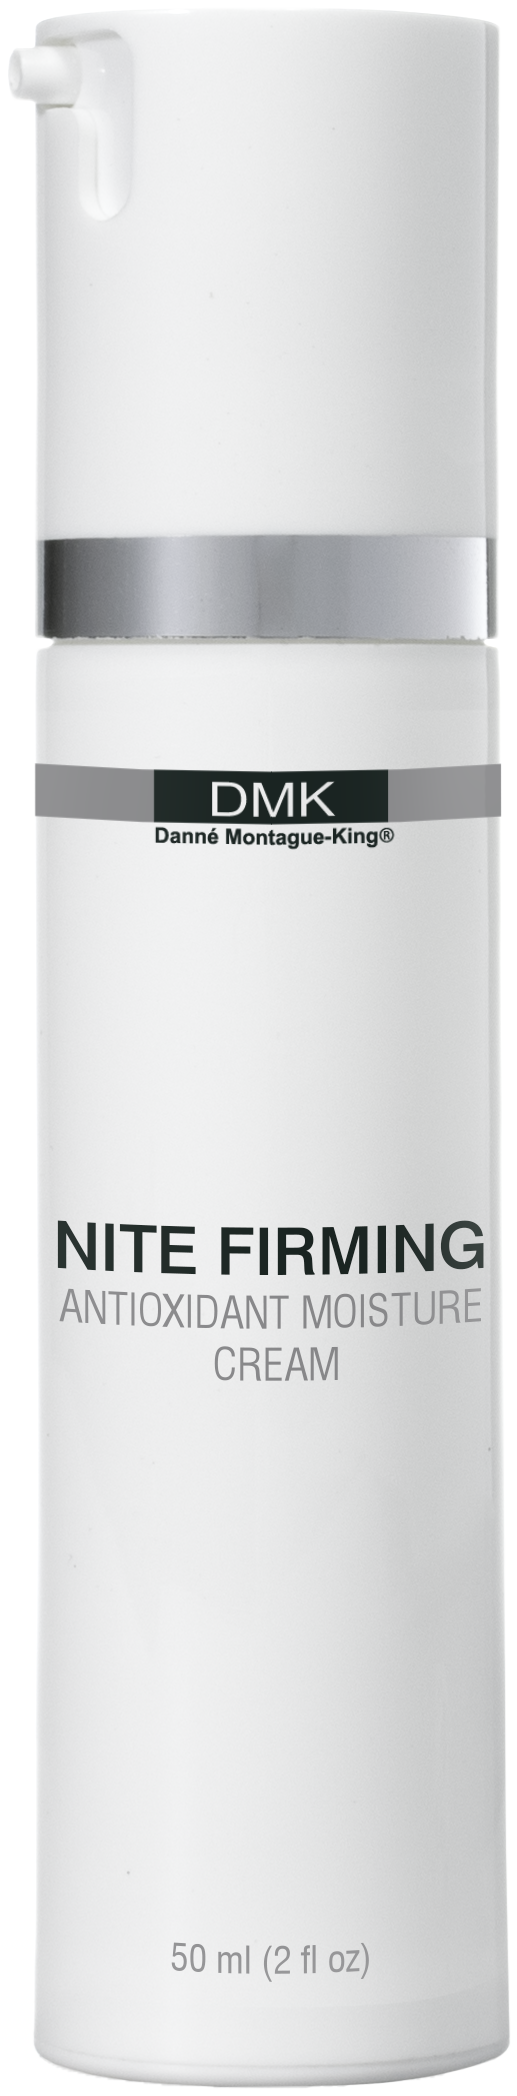 DMK Nite Firming - Satori Fiori Skin Care